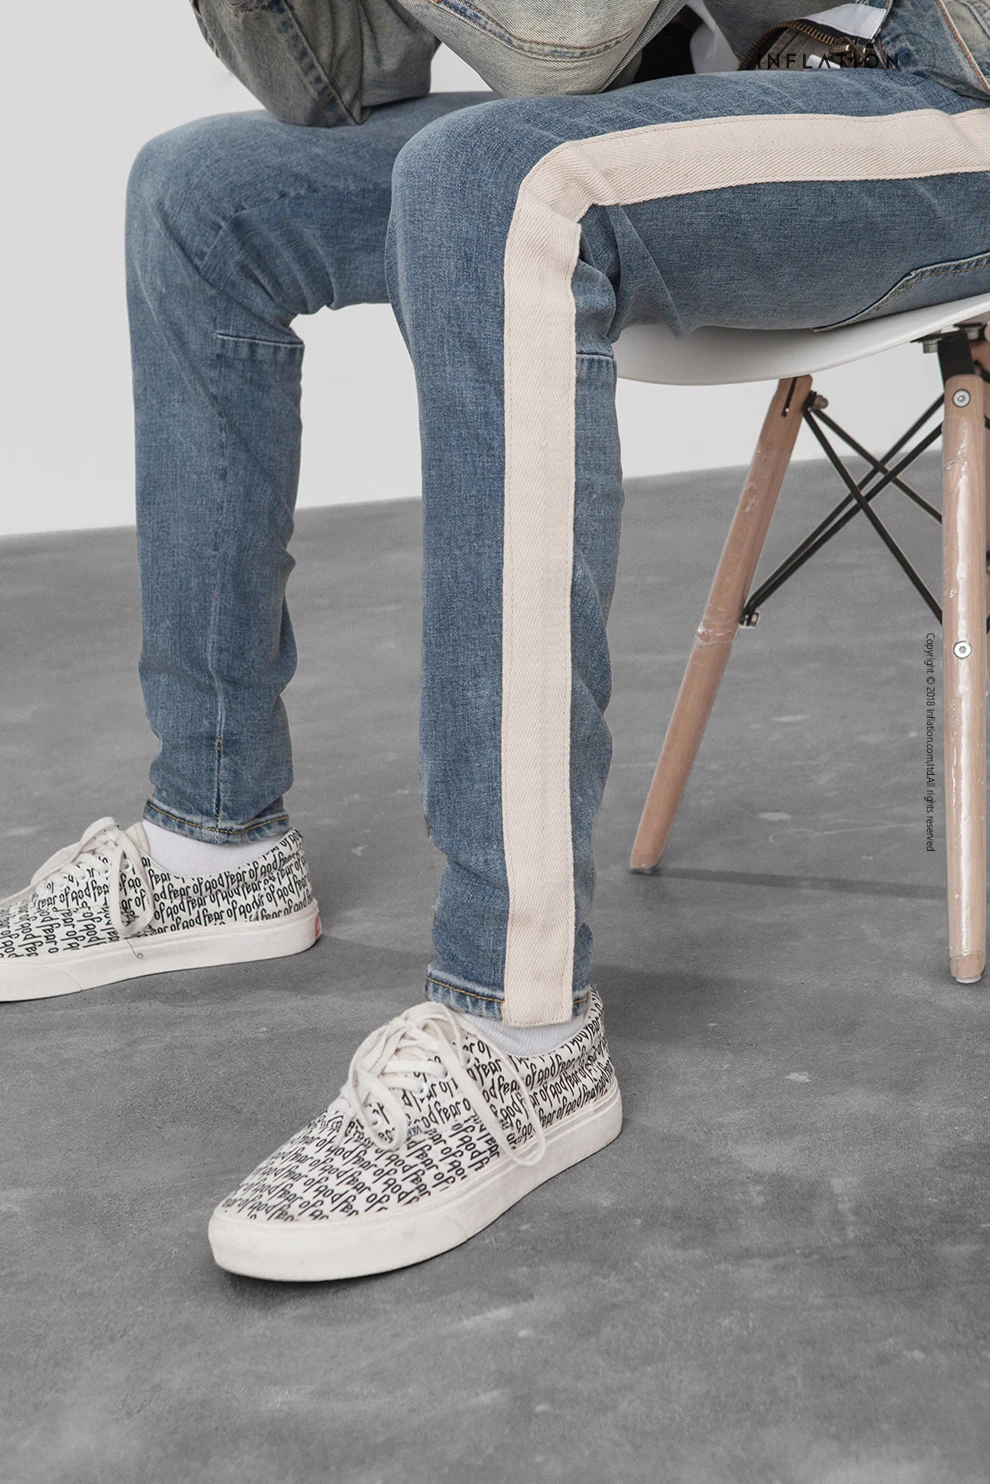 Мужские осенние повседневные джинсы с боковой полосой синие джинсы мужские s Новый бренд 2019 Slim Fit High Street узкие брюки мужские